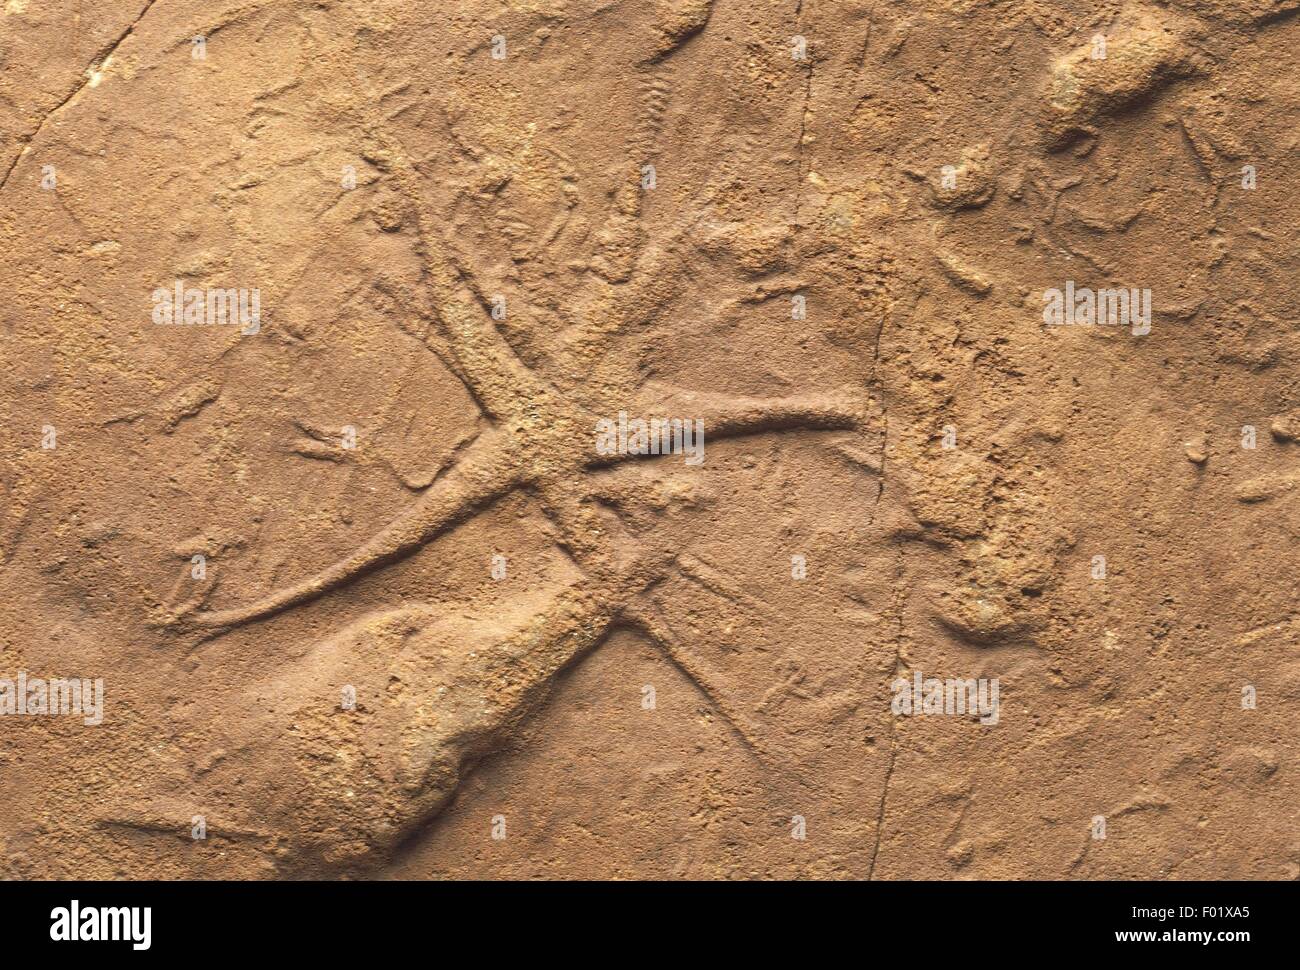 Fossils - Deuterostomia - Echinodermata - Asteroidea - Asteriacites lumbricalis - Triassic. Stock Photo